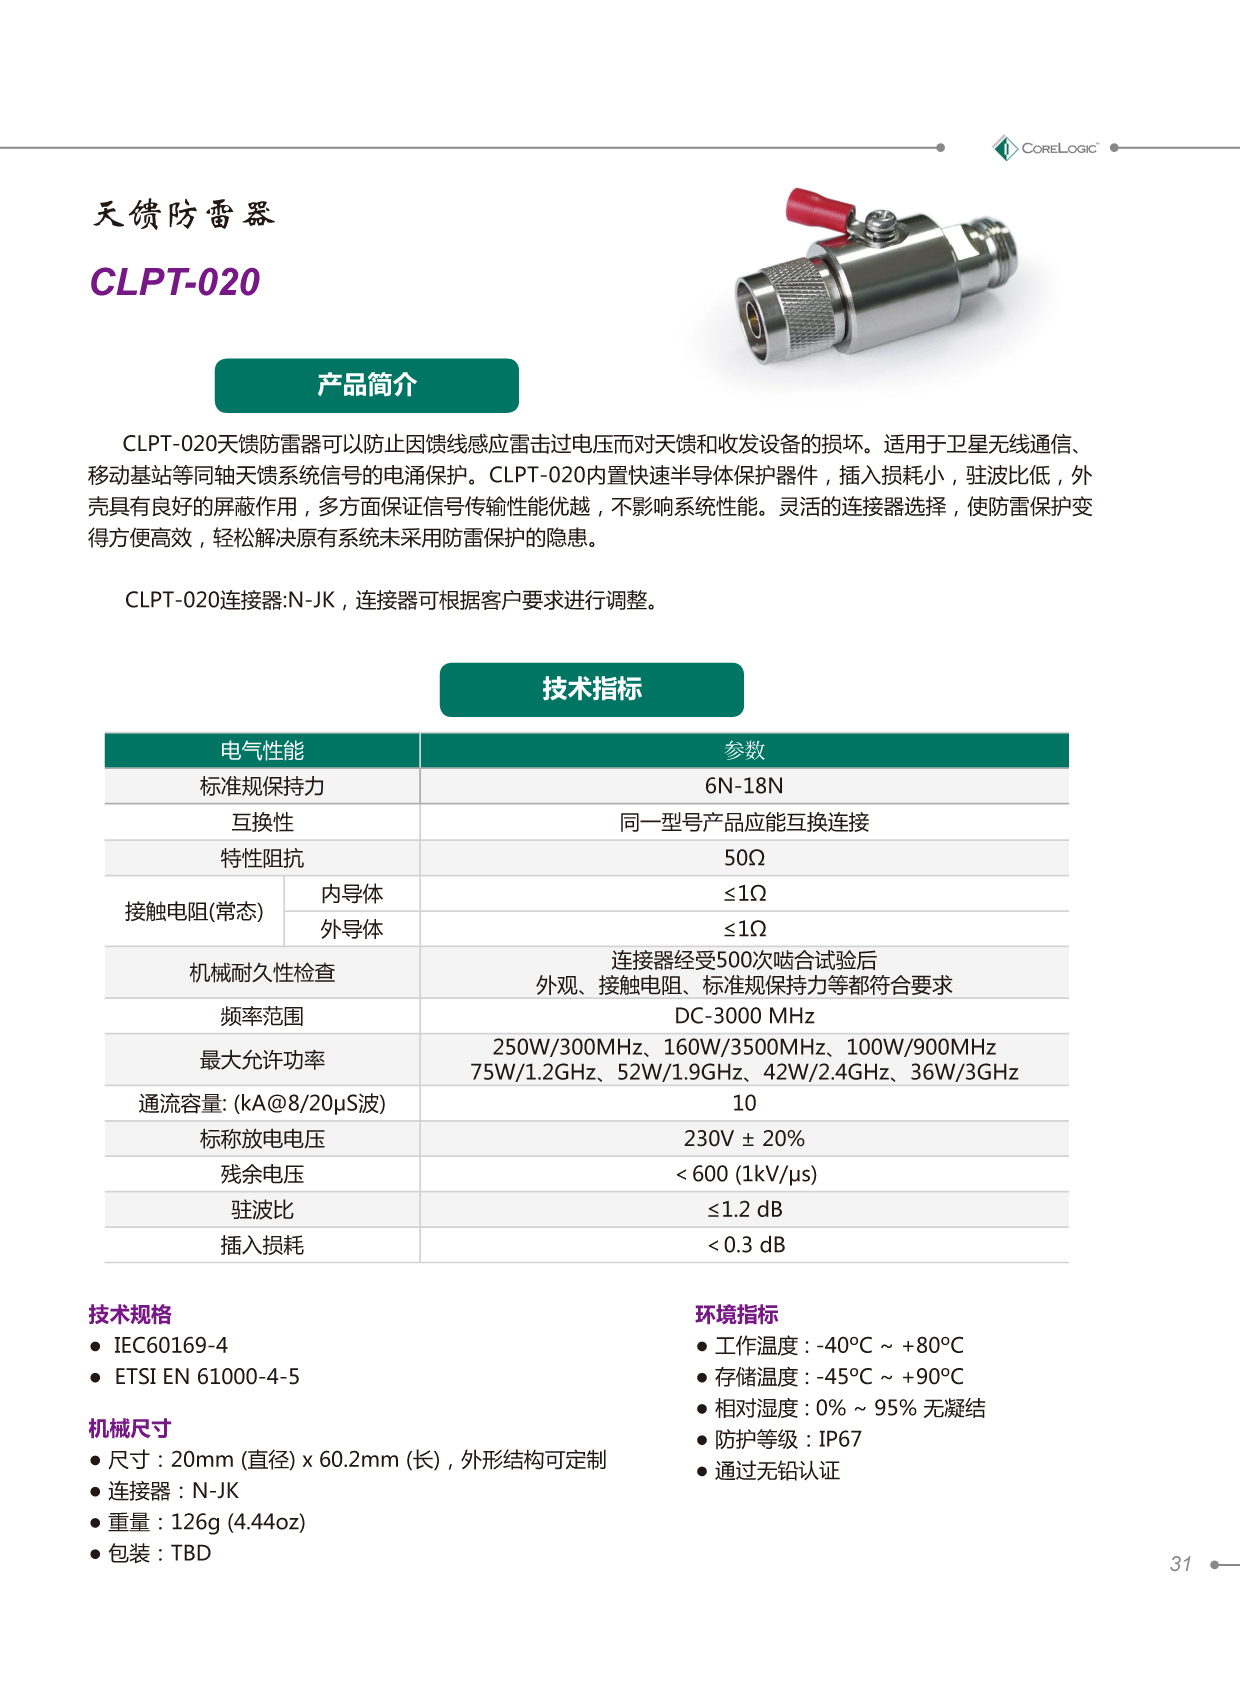 clpt-020产品详情